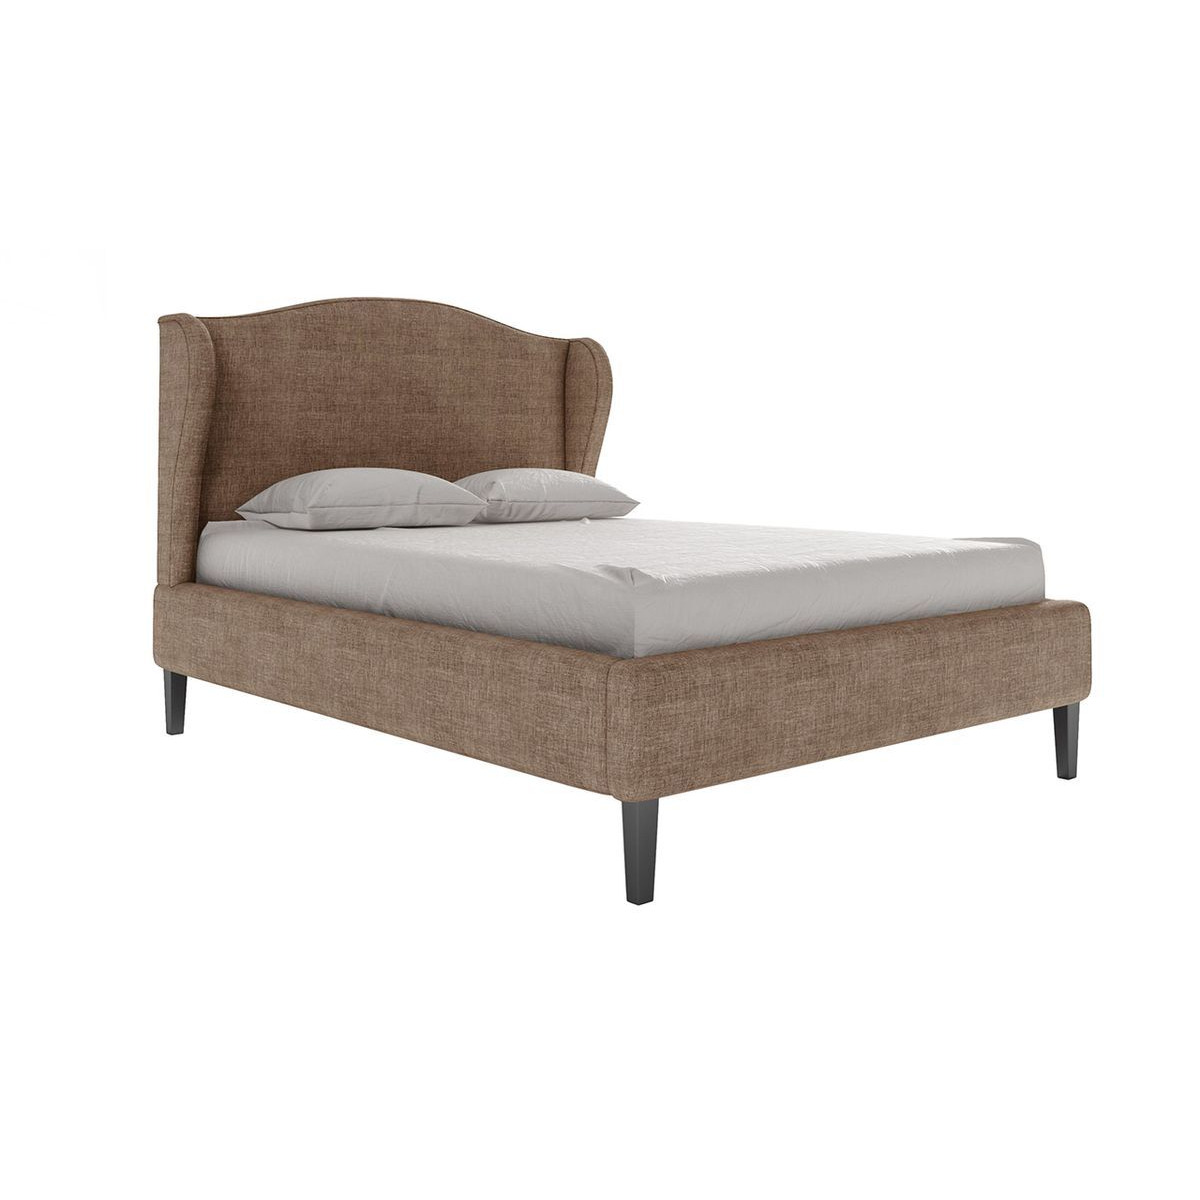 Hope Upholstered Bed Frame, light brown - image 1